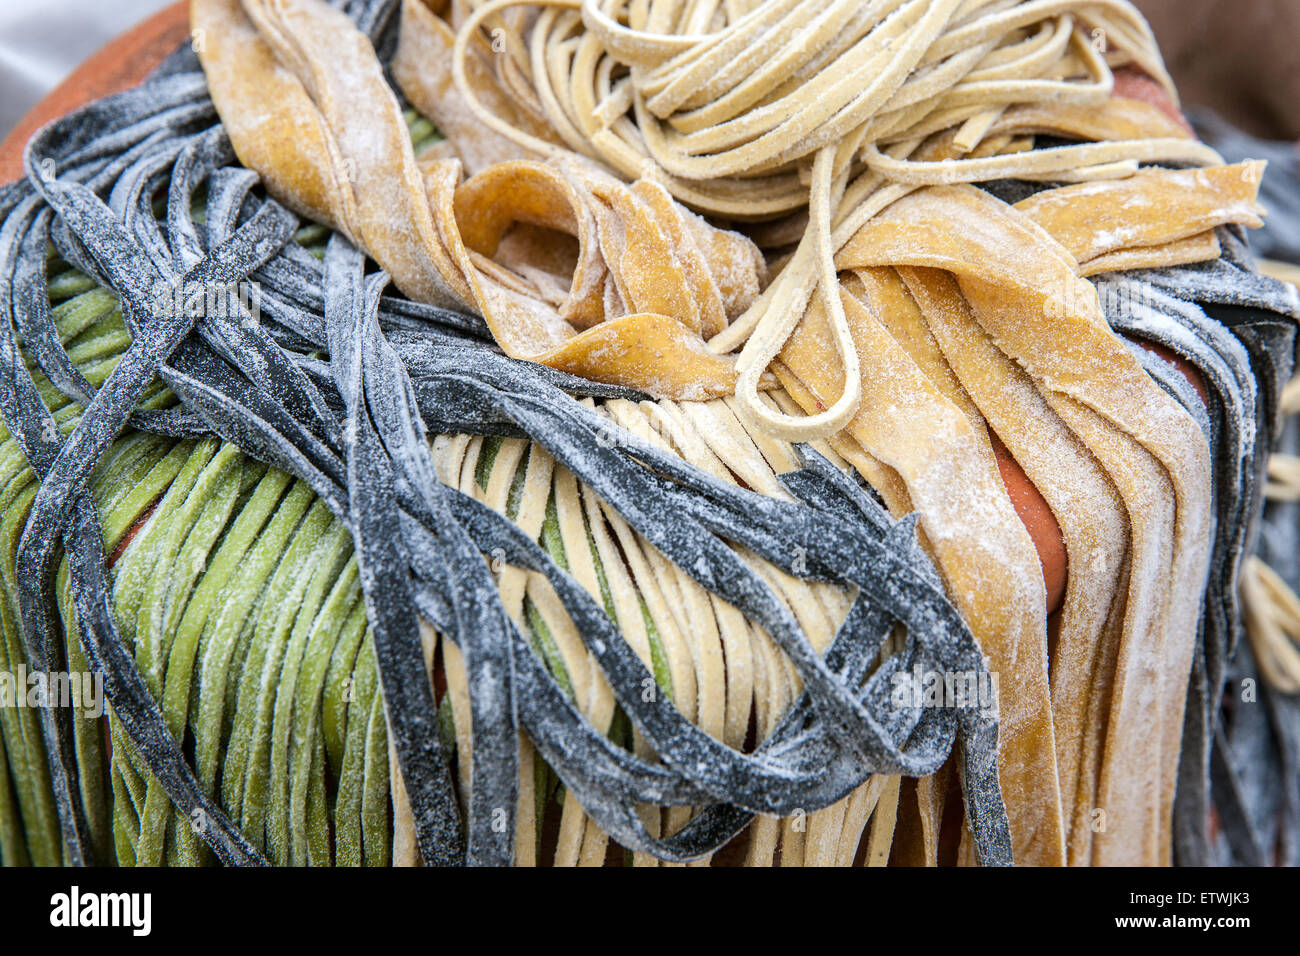 Las pastas italianas, alimentos orgánicos, hechos a mano, Foto de stock